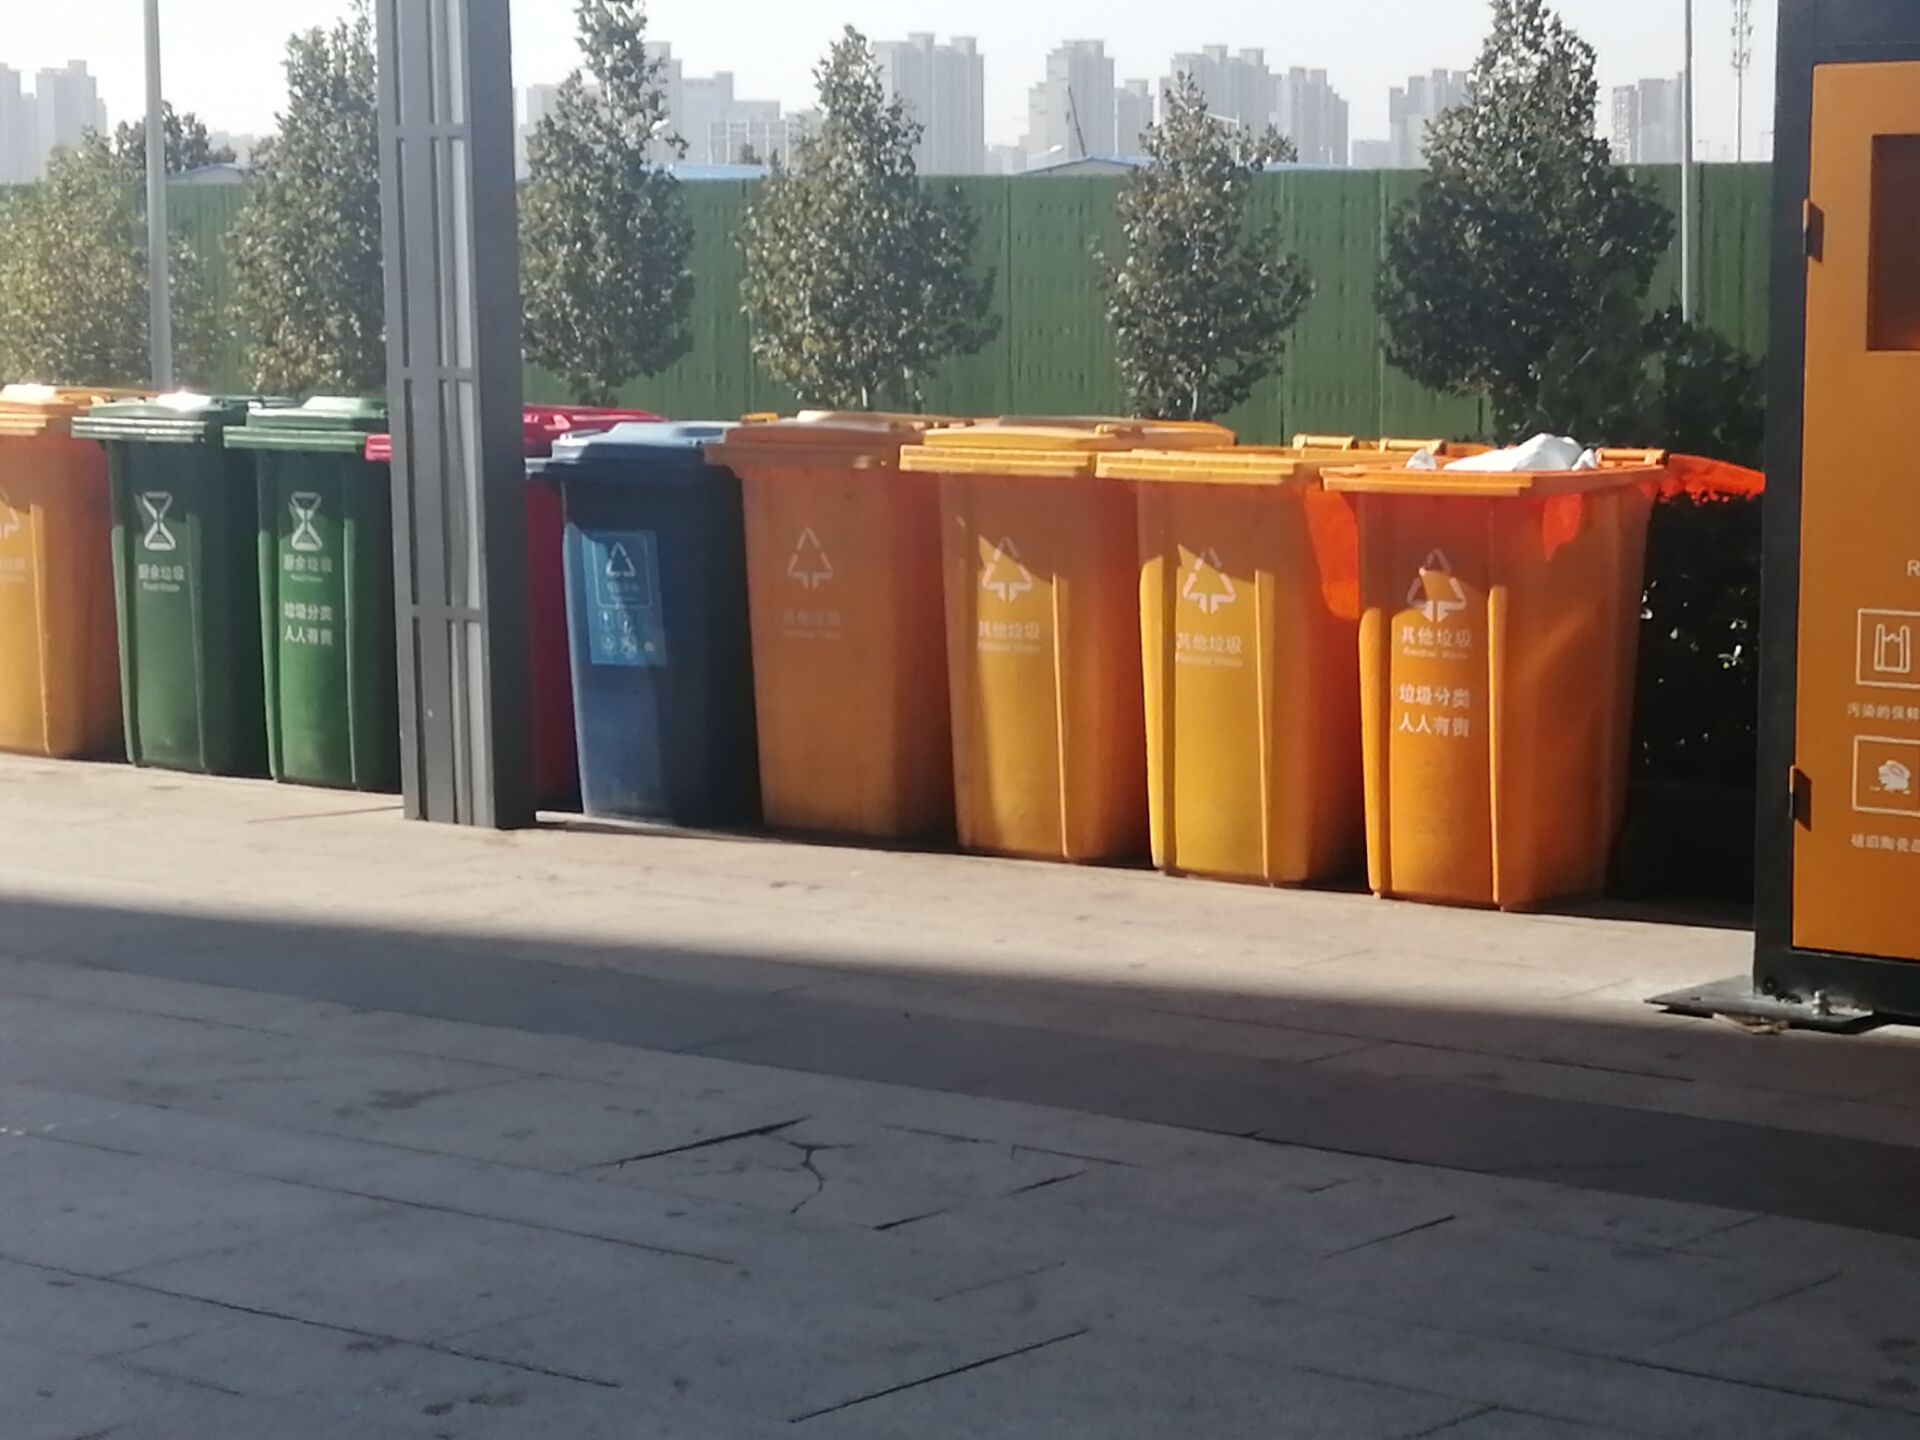 北京生活垃圾管理条例实施两周年 居民垃圾分类参与率提升26.4%